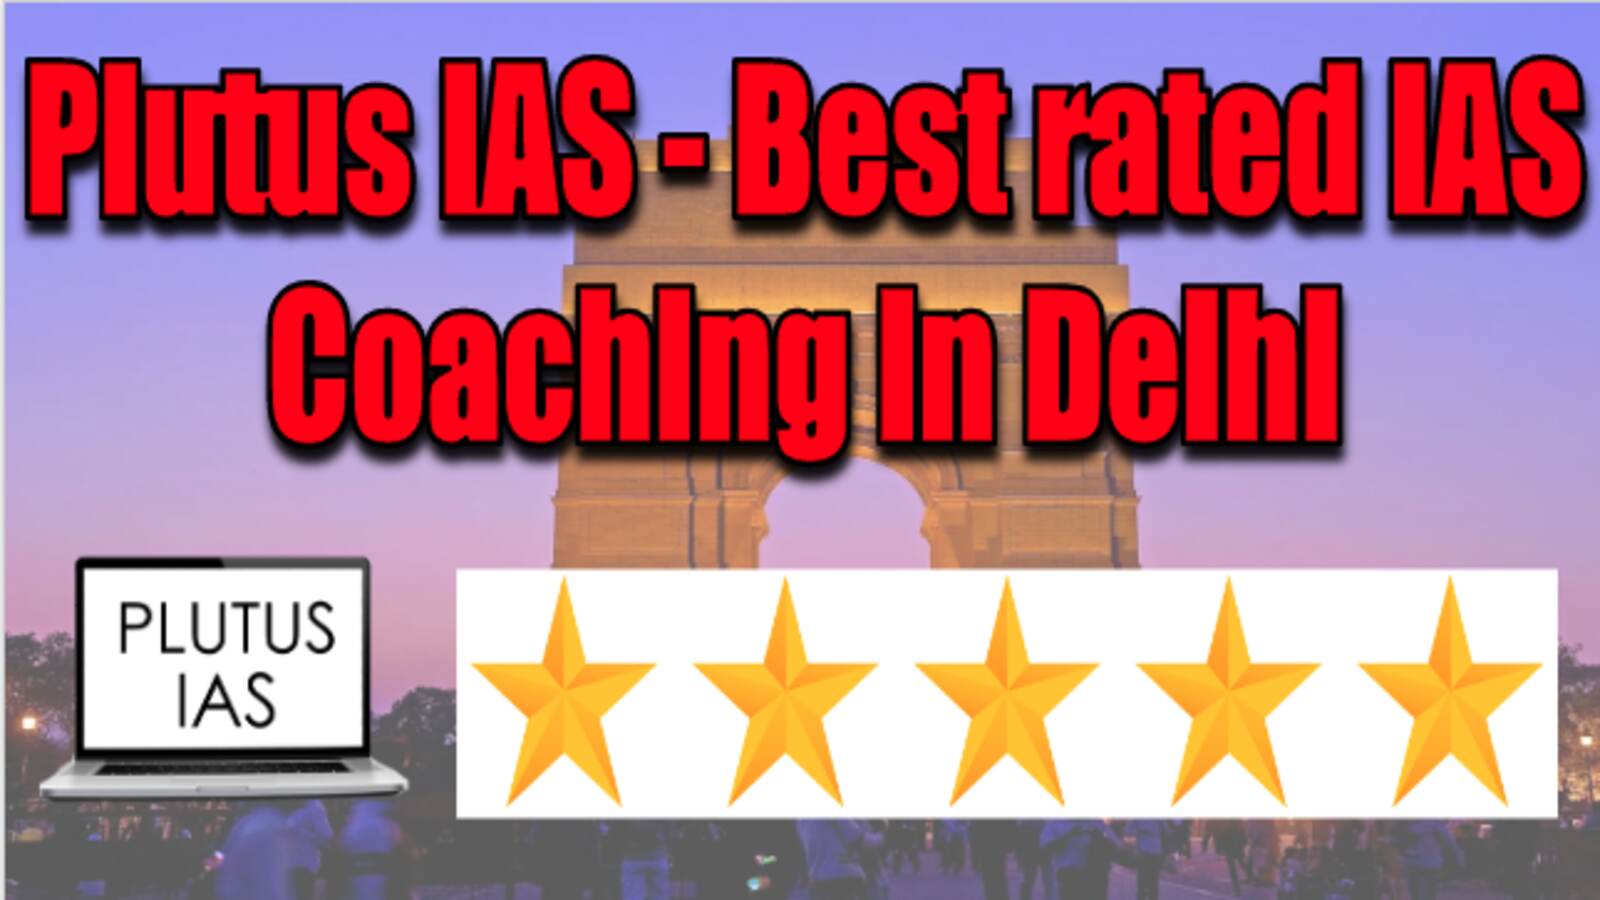 Plutus IAS Best rated IAS Coaching in Delhi